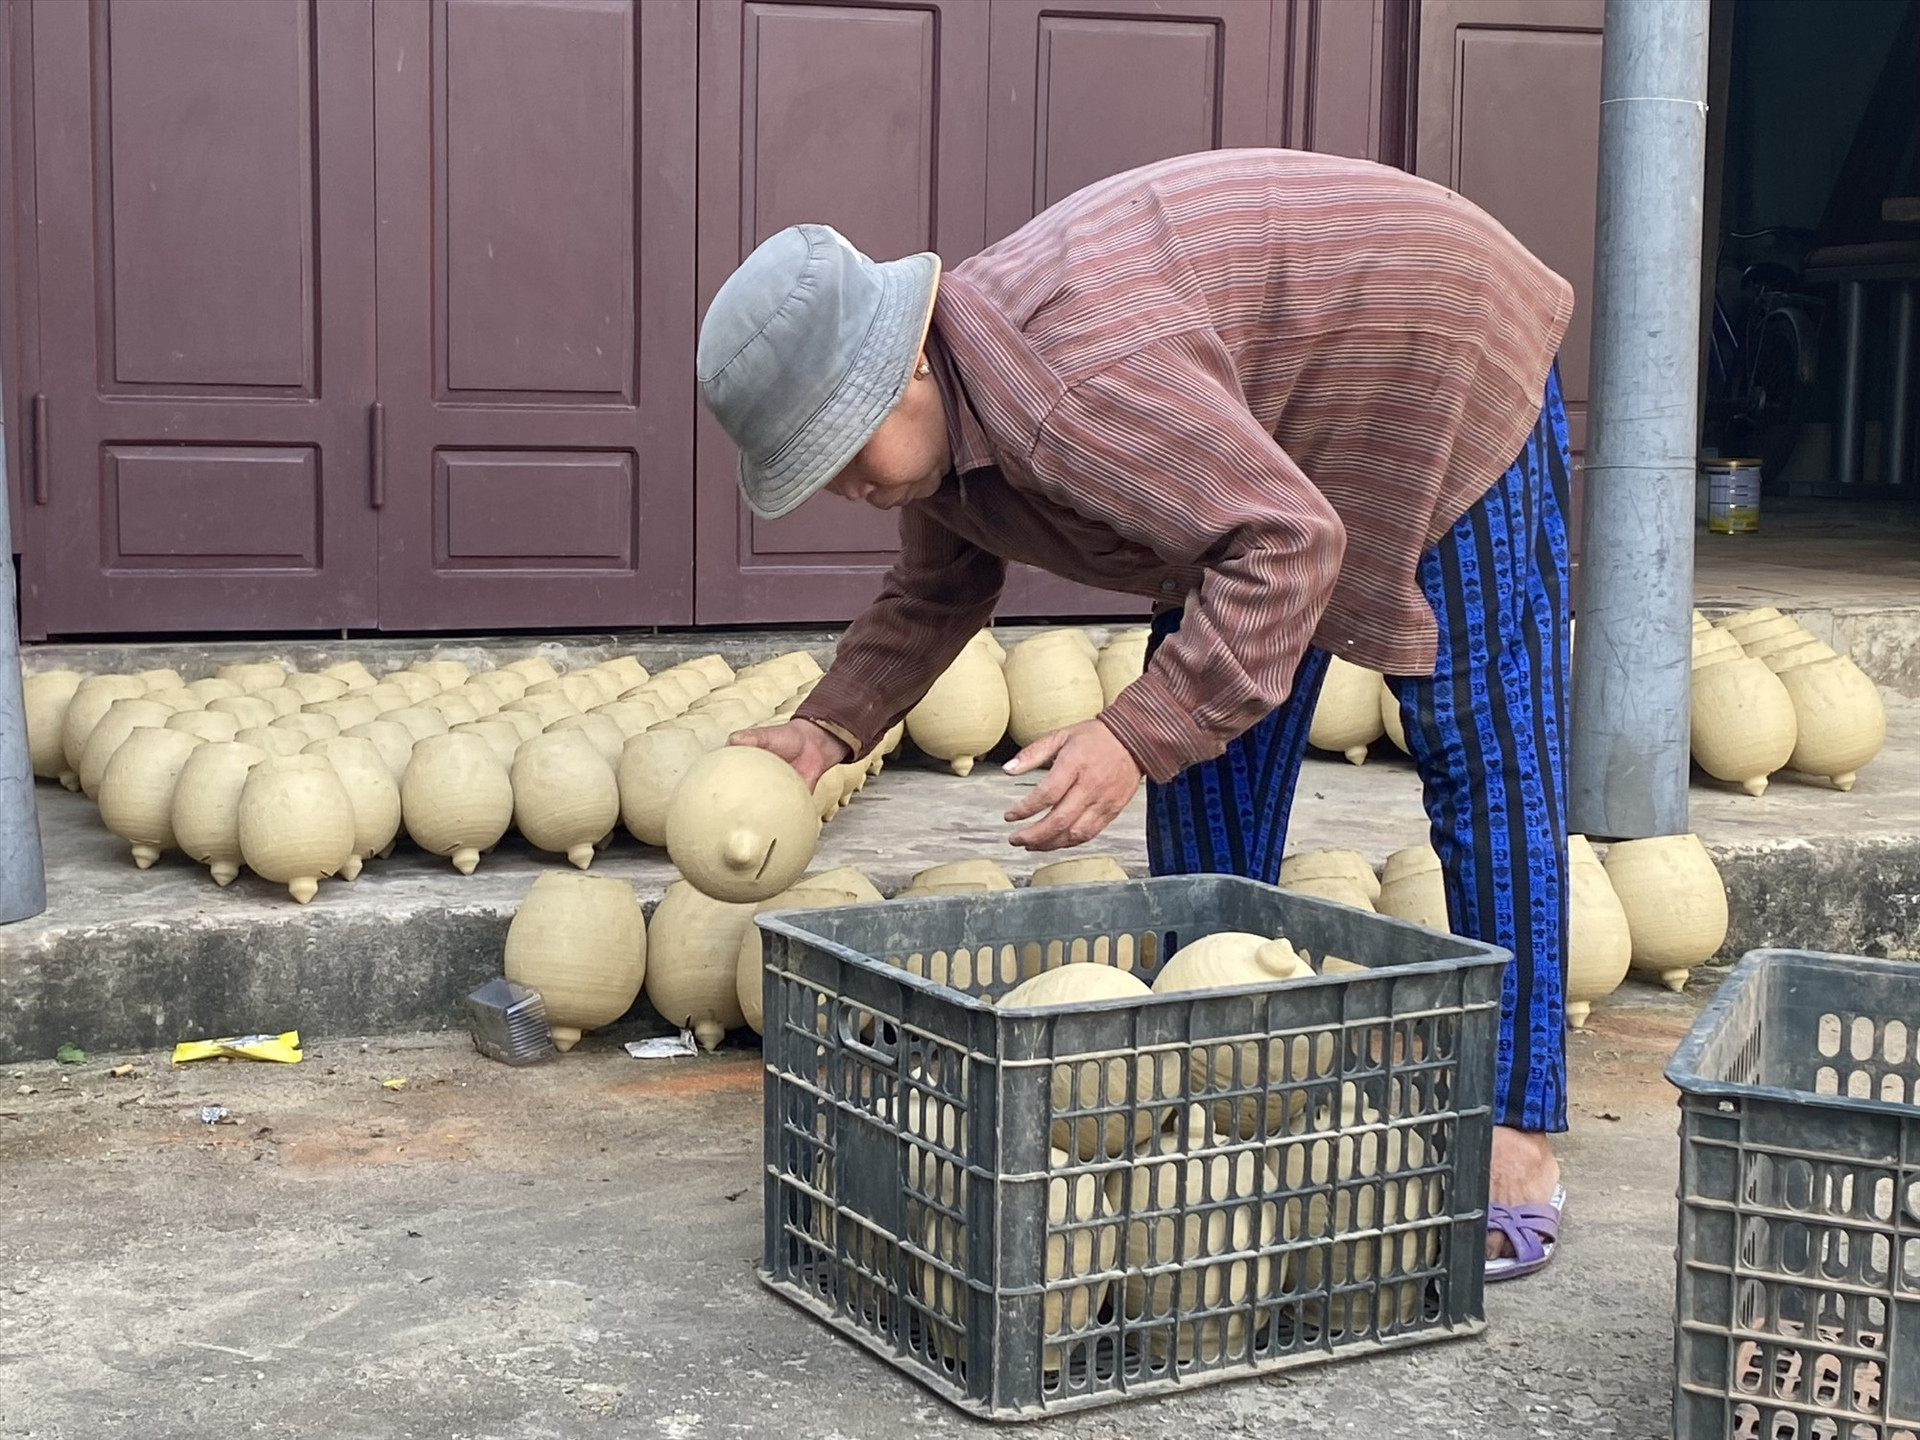 Làng Thanh Hà hiện chỉ còn 2 hộ sản xuất gốm dân dựng truyền thống. Ảnh: V.L